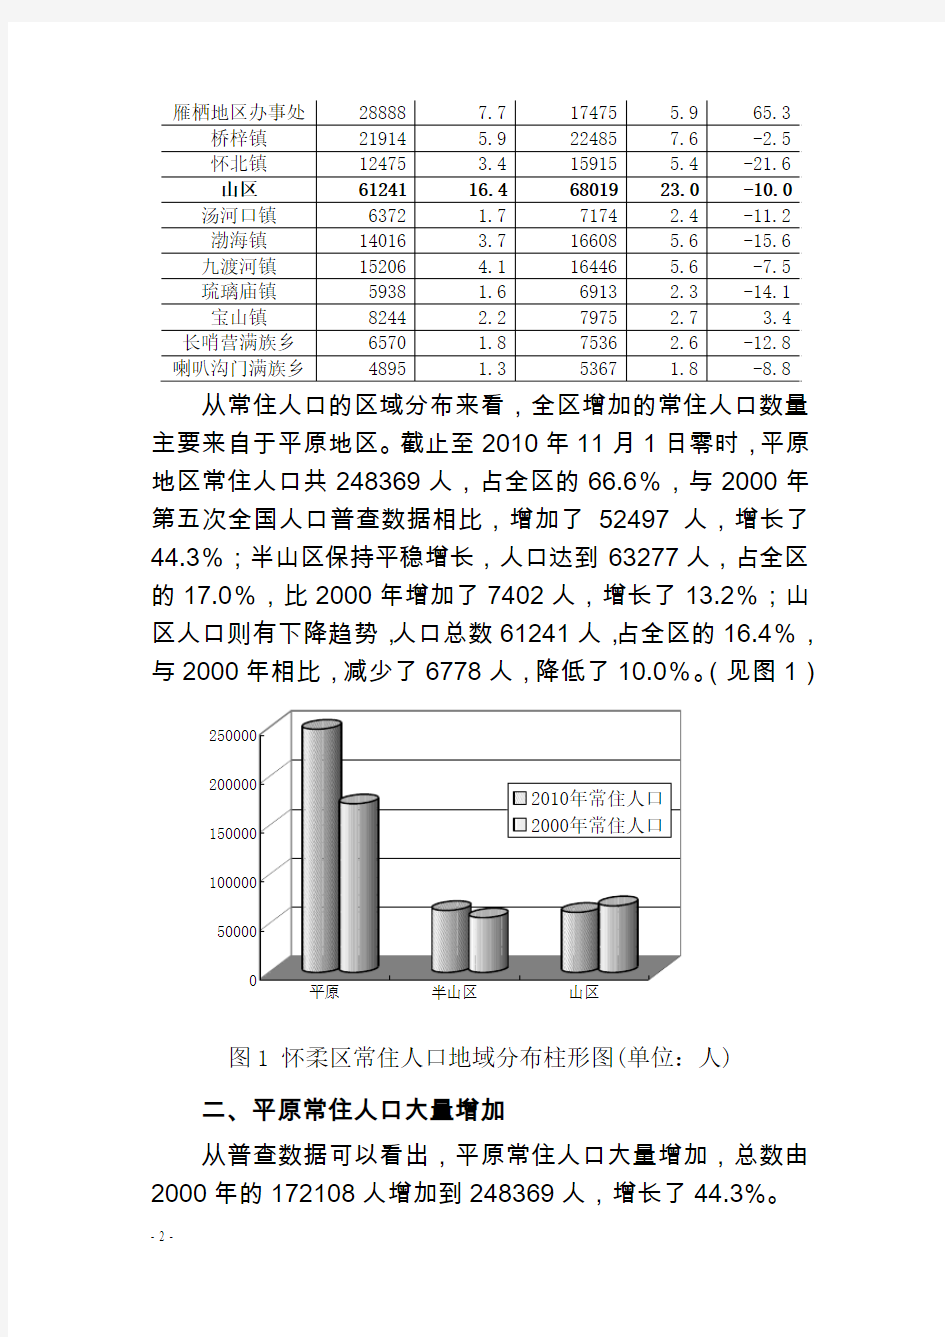 北京怀柔区第六次全国人口普查